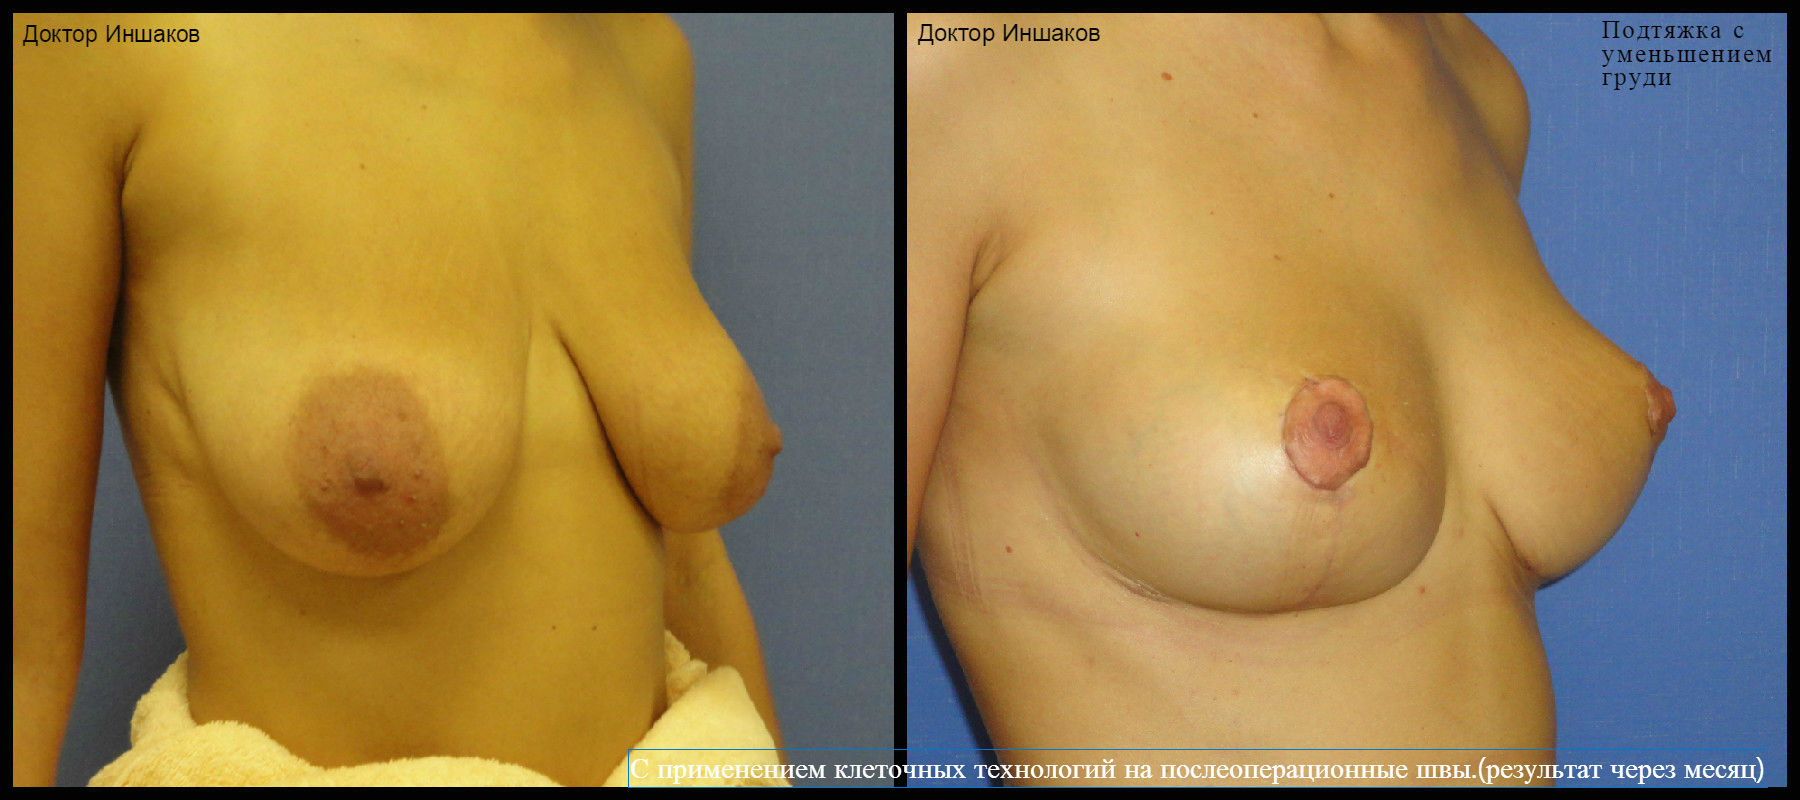 операция по уменьшения размера груди фото 68